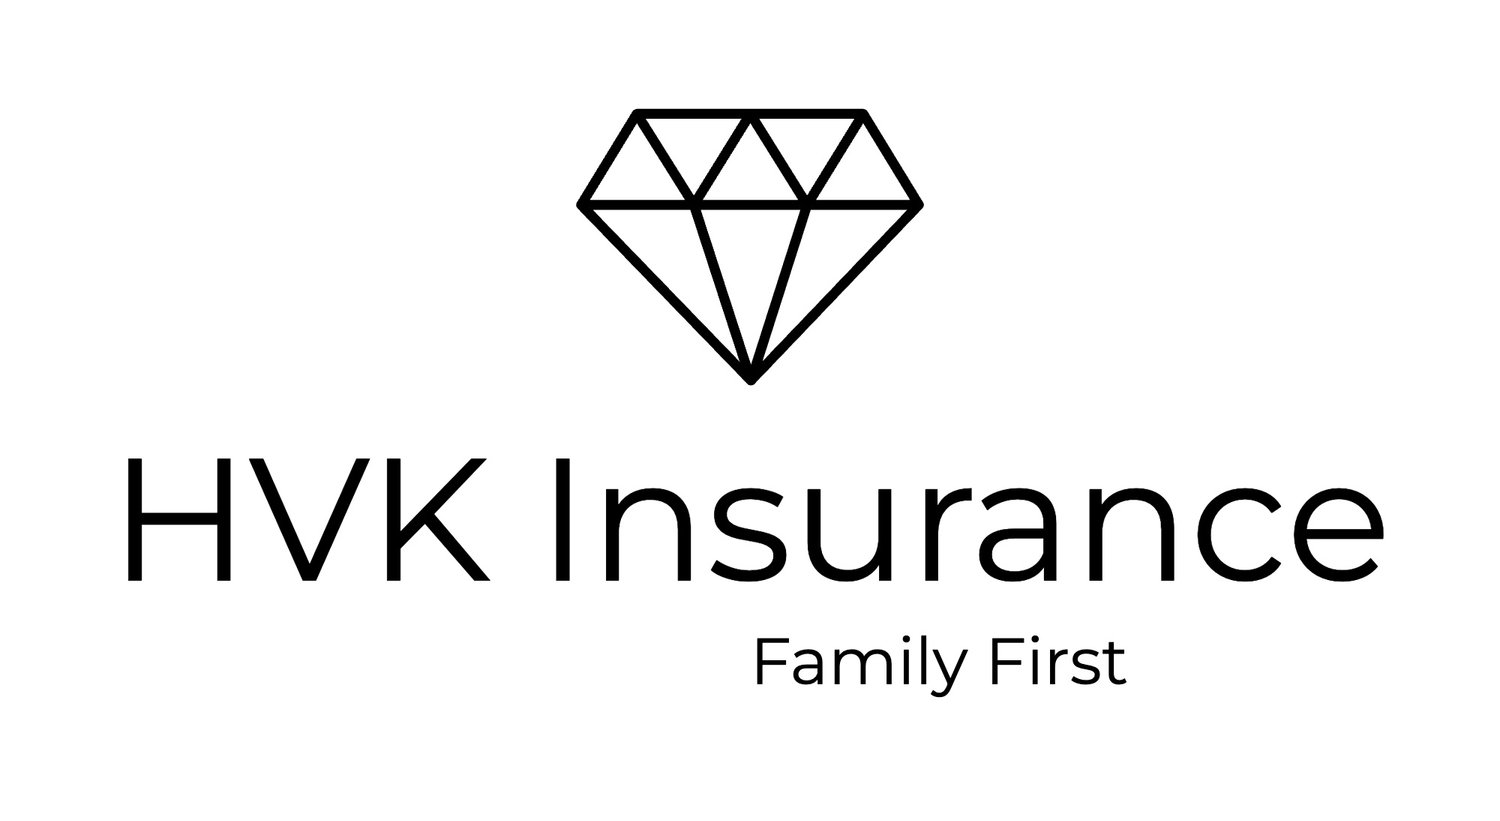 HVK Insurance